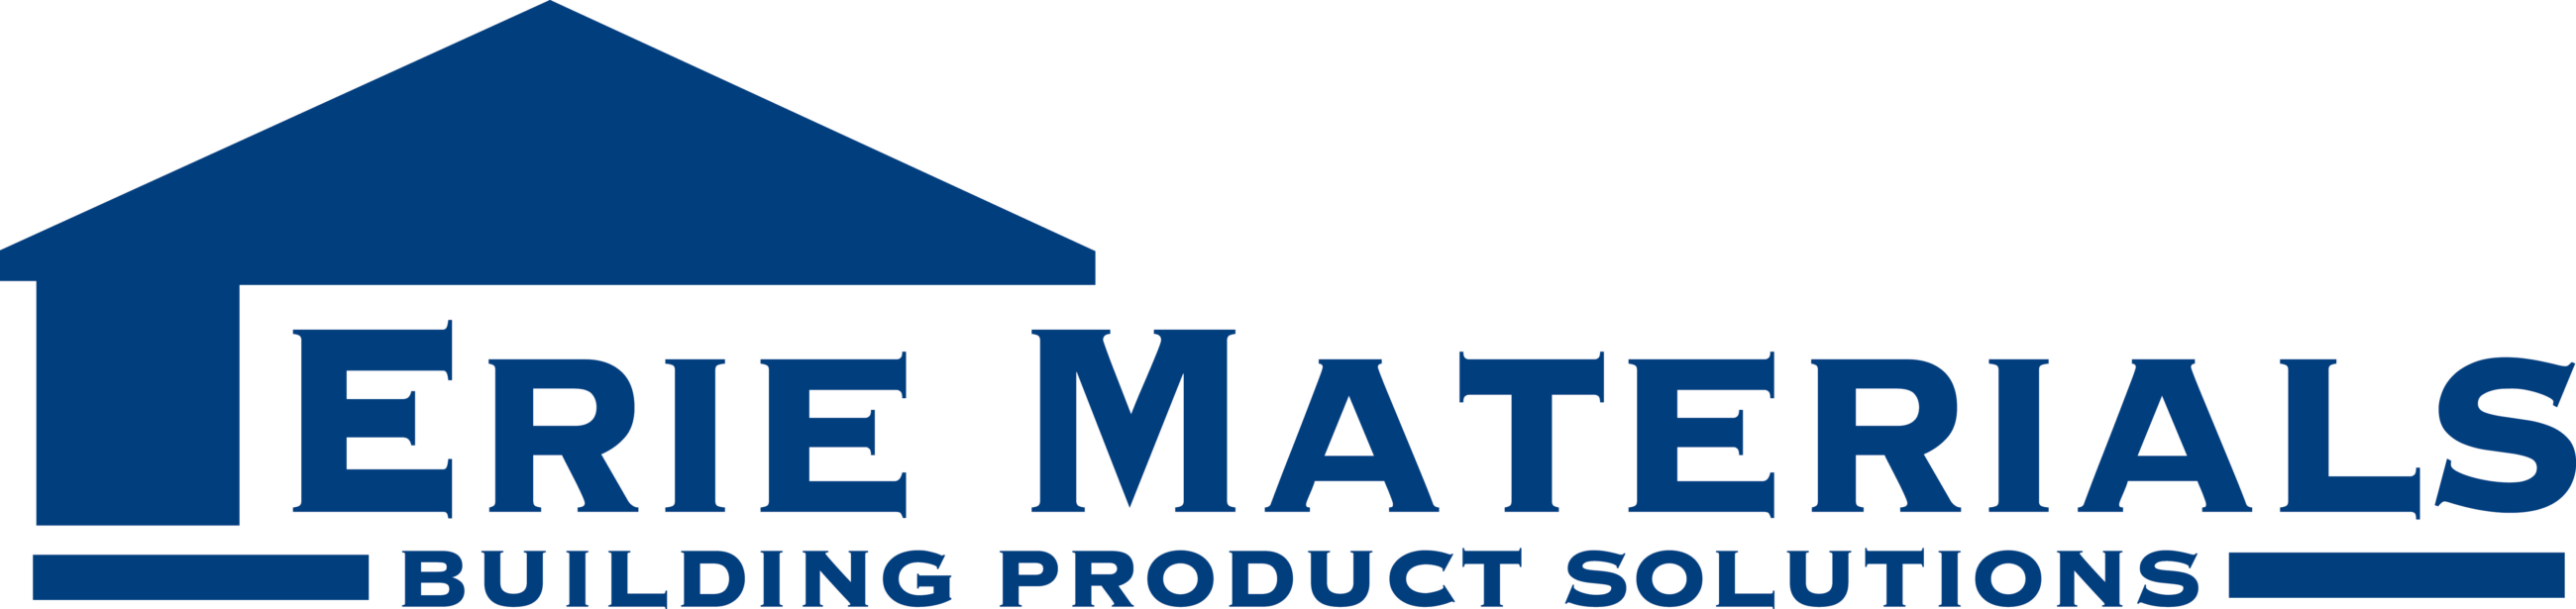 erie materials logo